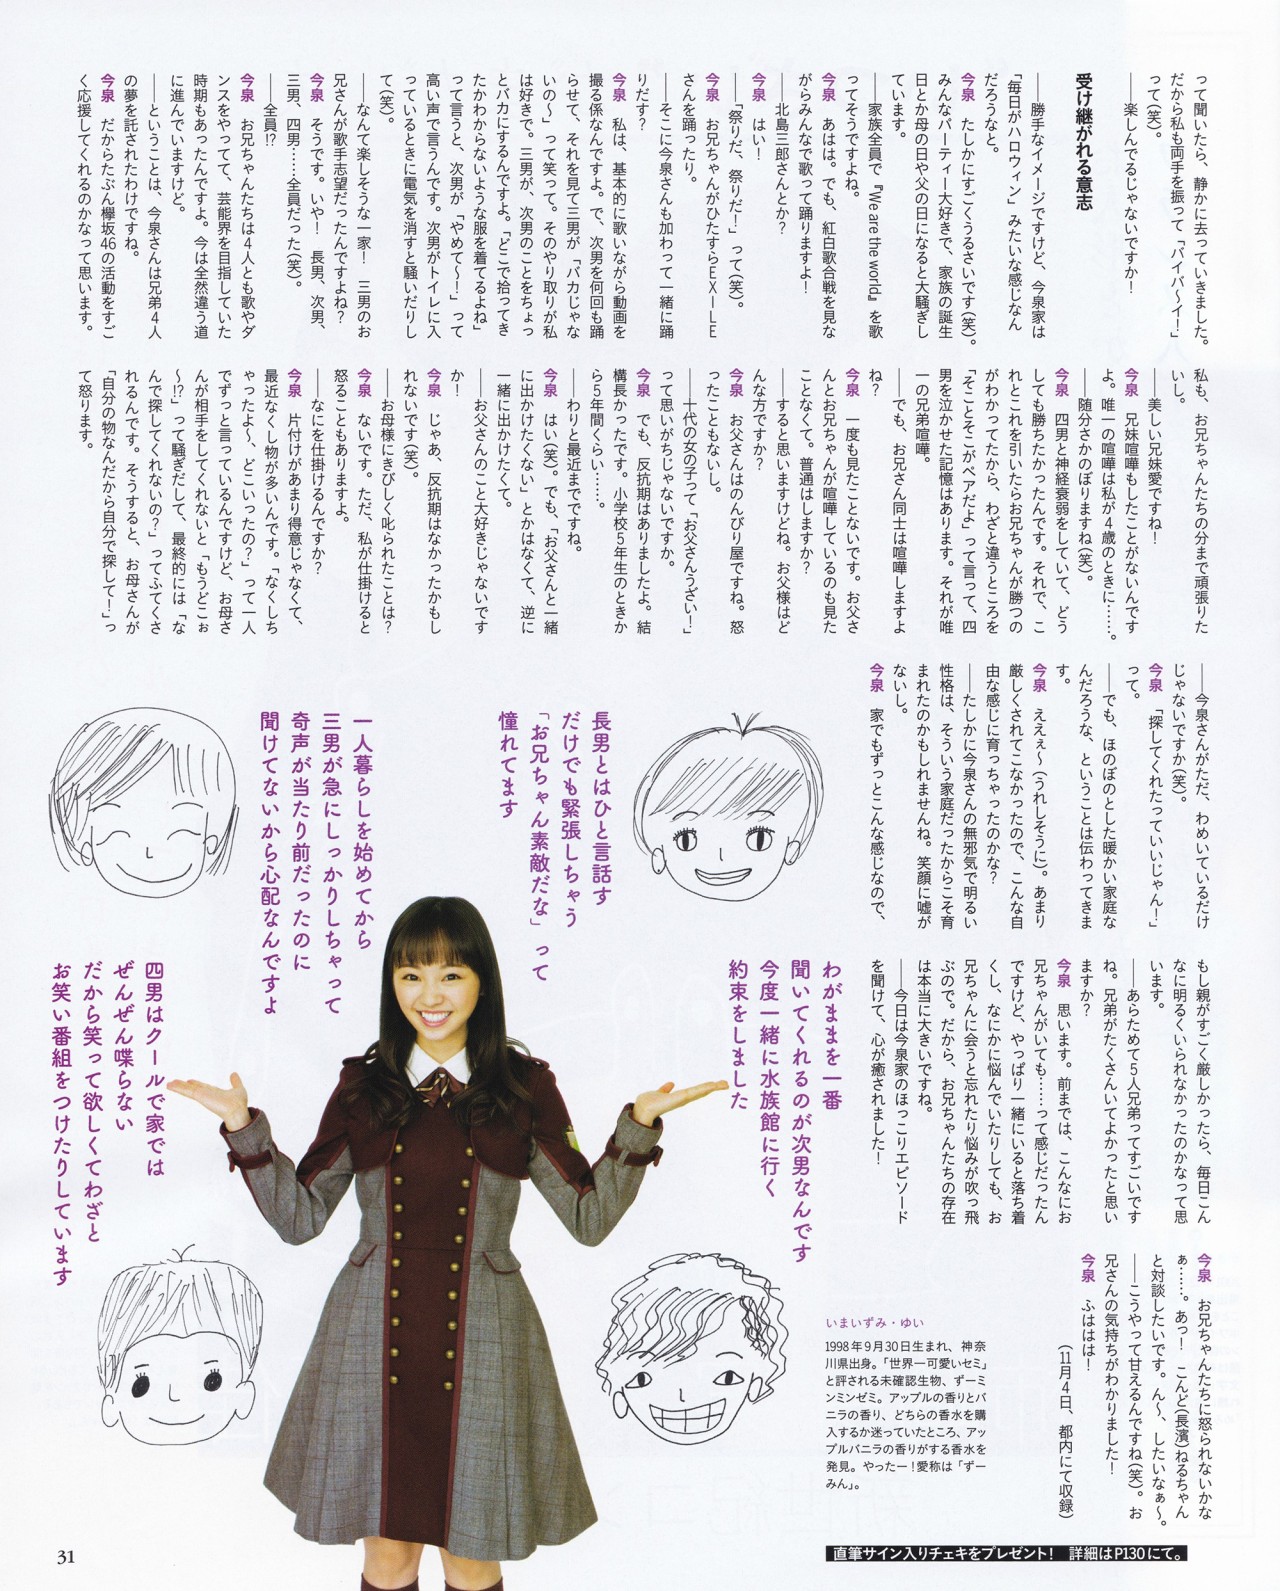 merumeru48:  「BUBKA 2017.1 Issue」 - Imaizumi Yui via La_mela 